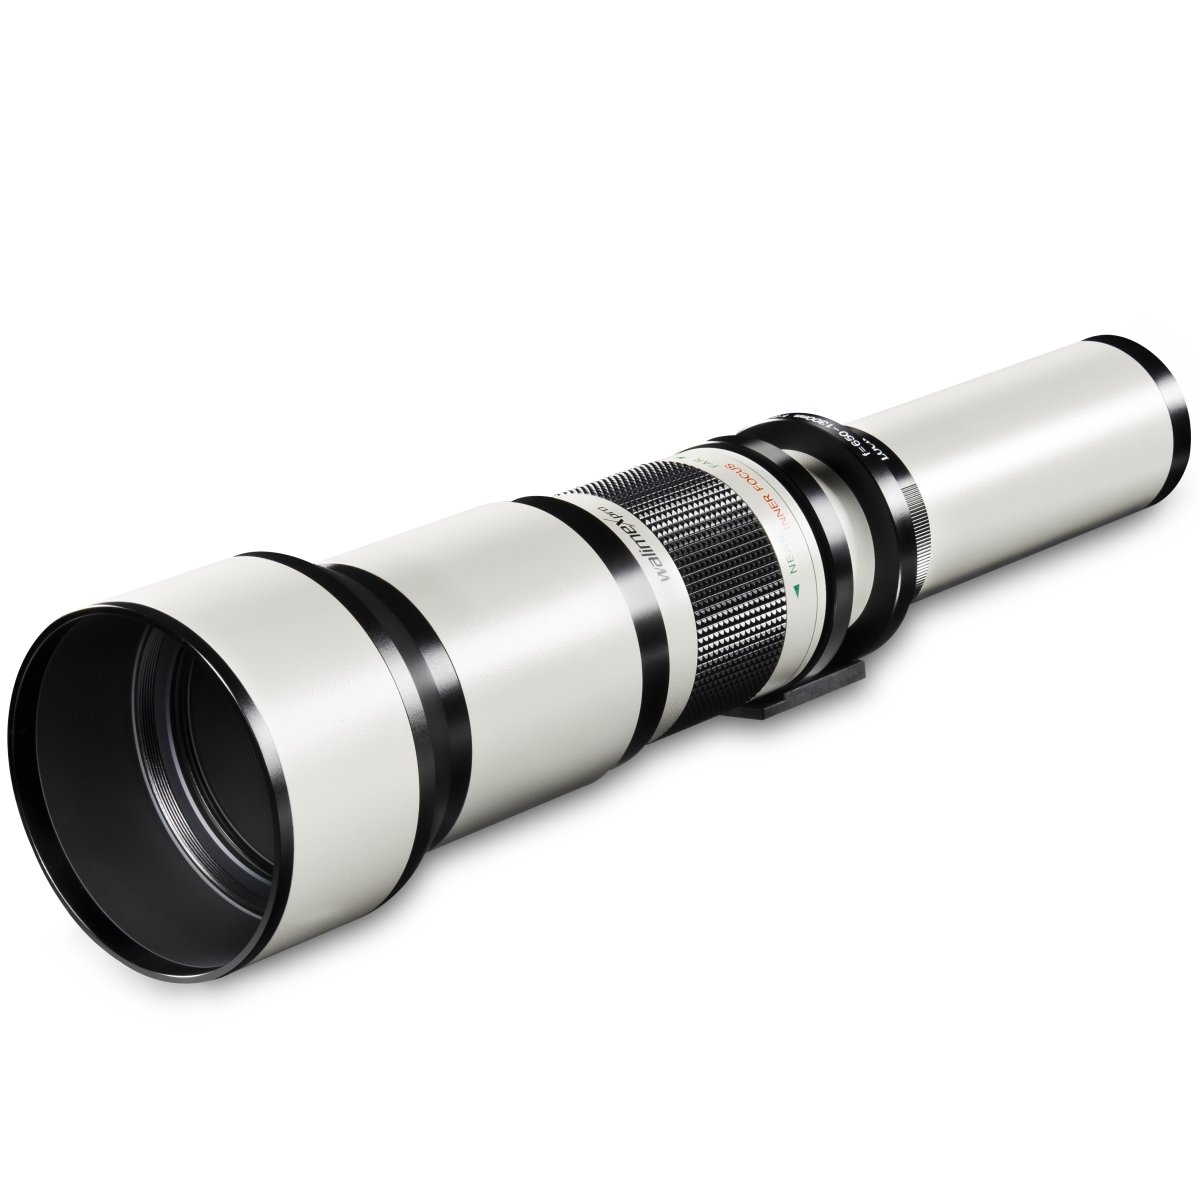 Walimex pro 650-1300mm 1:8-16 CSC Teleobjektiv für Canon EOS M - Manueller Fokus, Zoom-Teleobjektiv für Vollformat & APS-C Sensor, Ganzmetallfassung, inkl. Aufbewahrungstasche & Objektivdeckeln